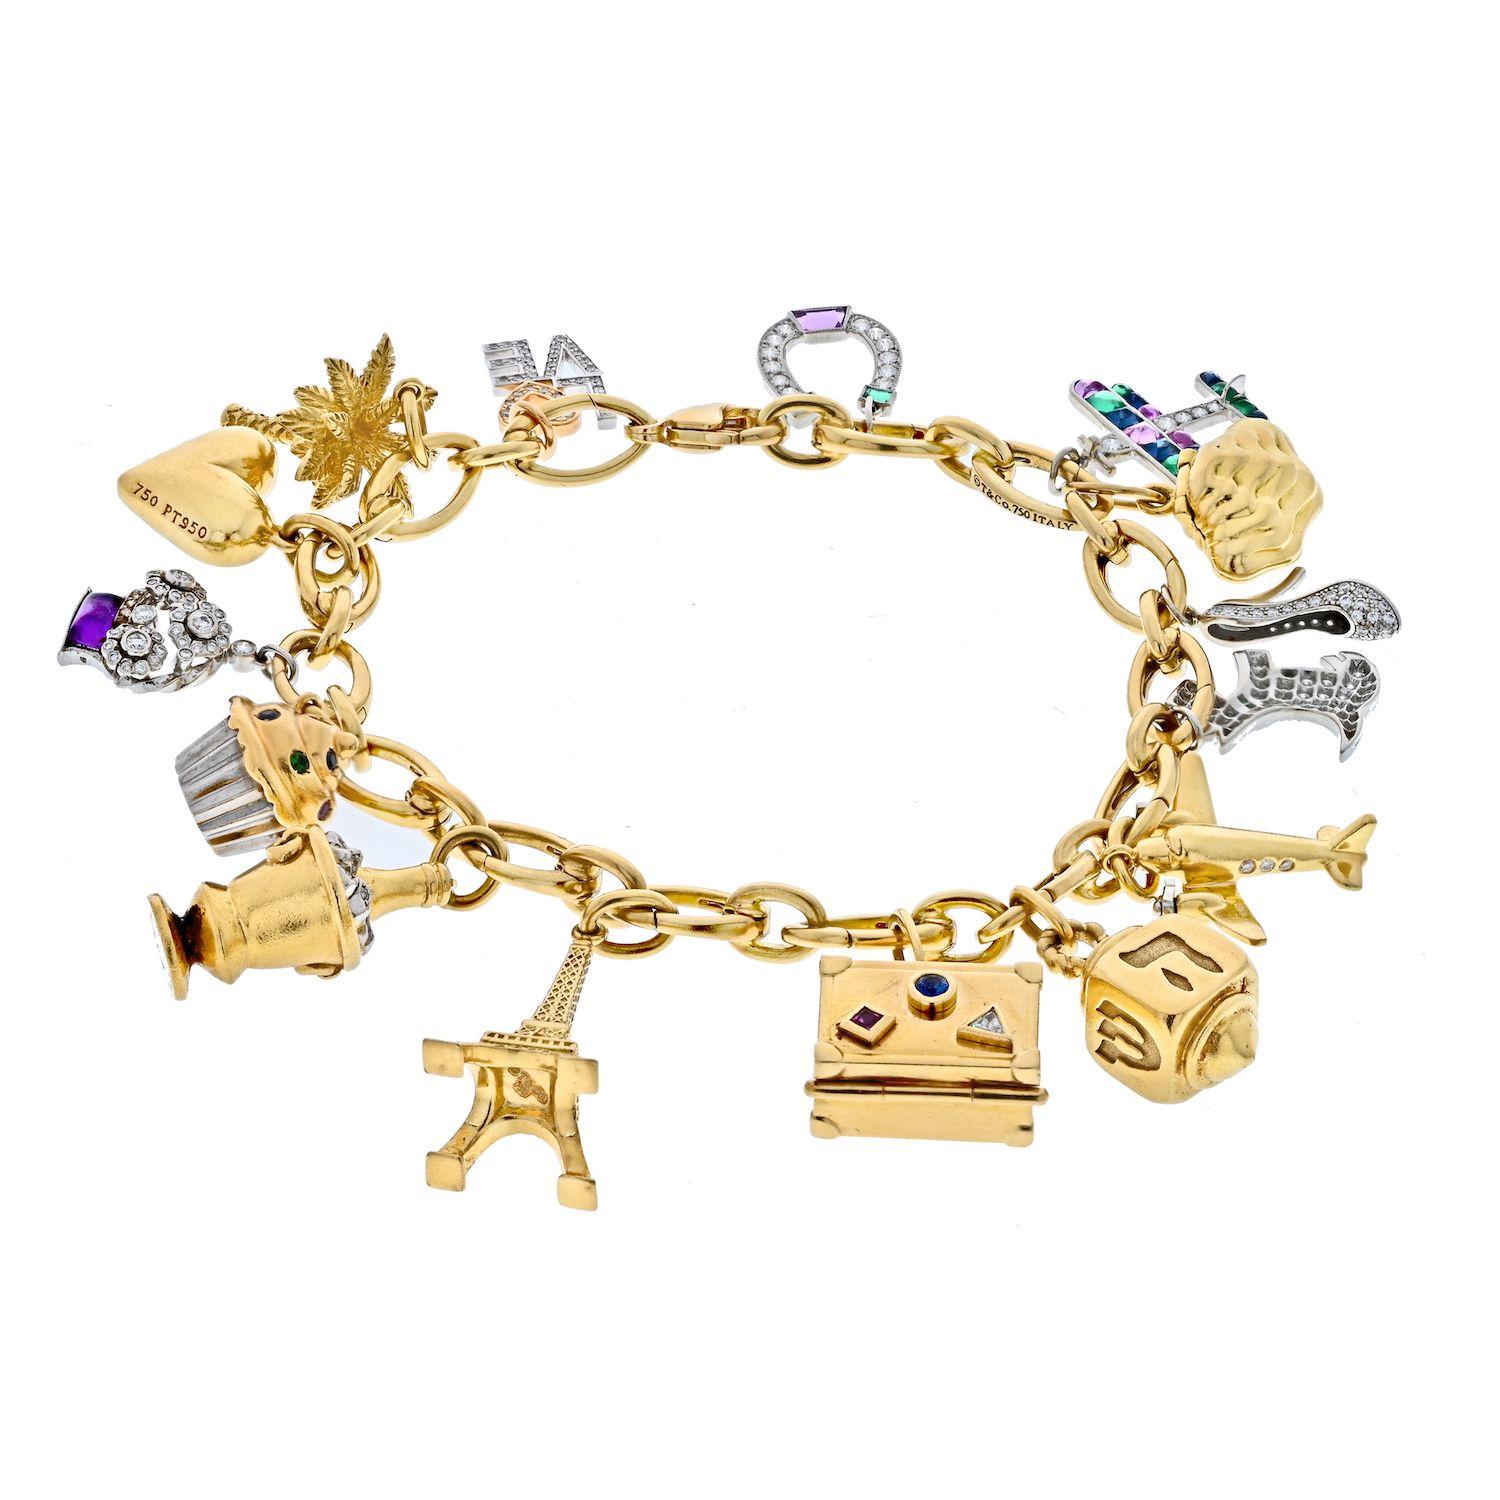 Tiffany & Co. Bracelet à breloques en platine et or jaune 18 carats, serti de pierres précieuses et de diamants.

Le bracelet à maillons en or suspend 15 charmes dont un palmier, un seau à champagne serti de diamants ronds, un avion, une chaussure